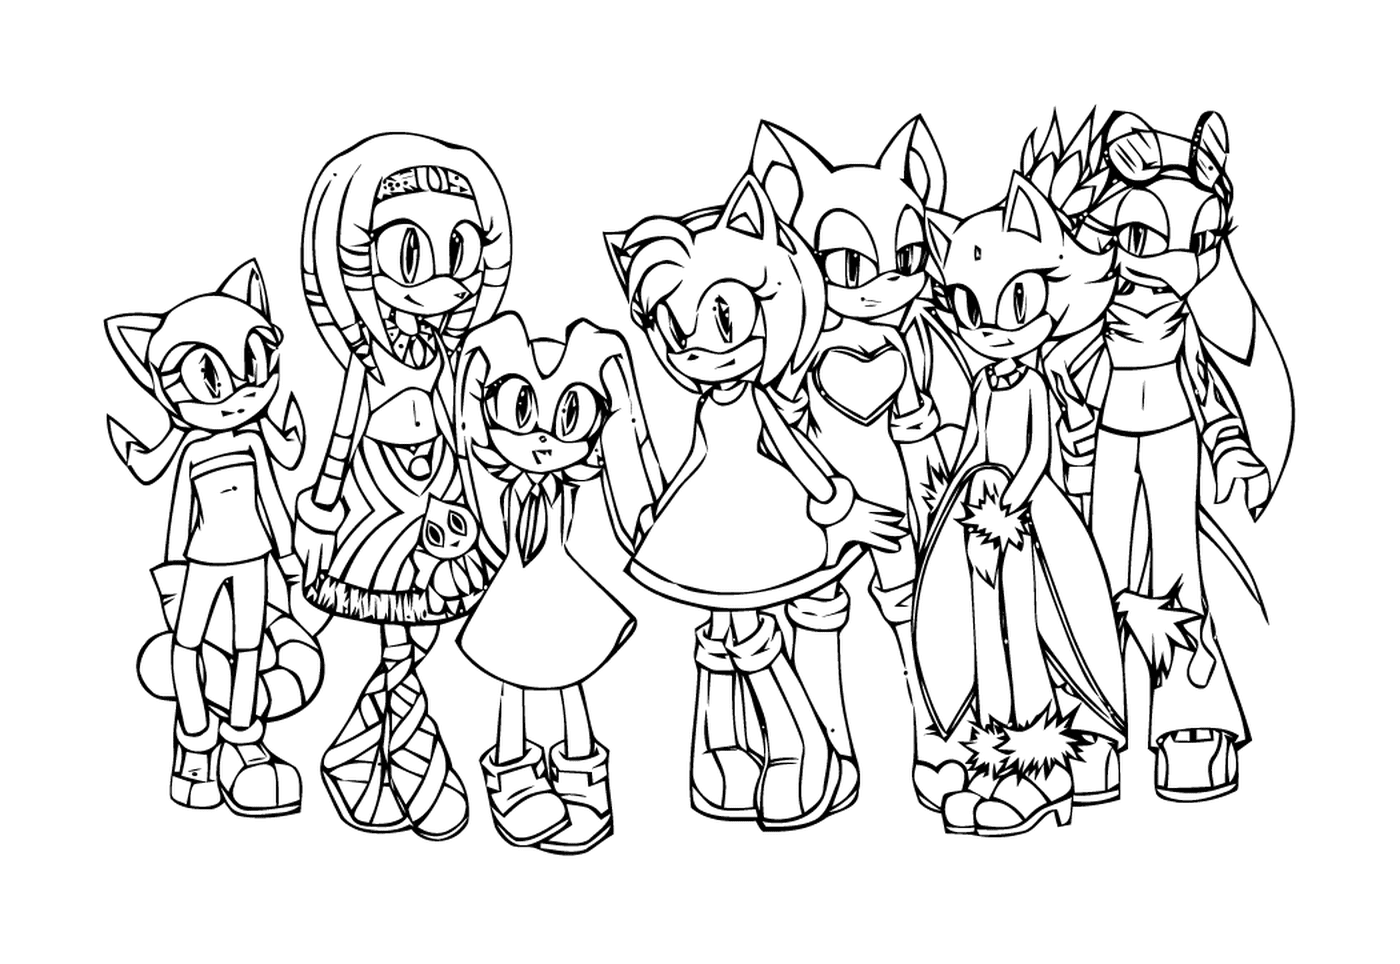  Sonic und seine Freunde vereint 